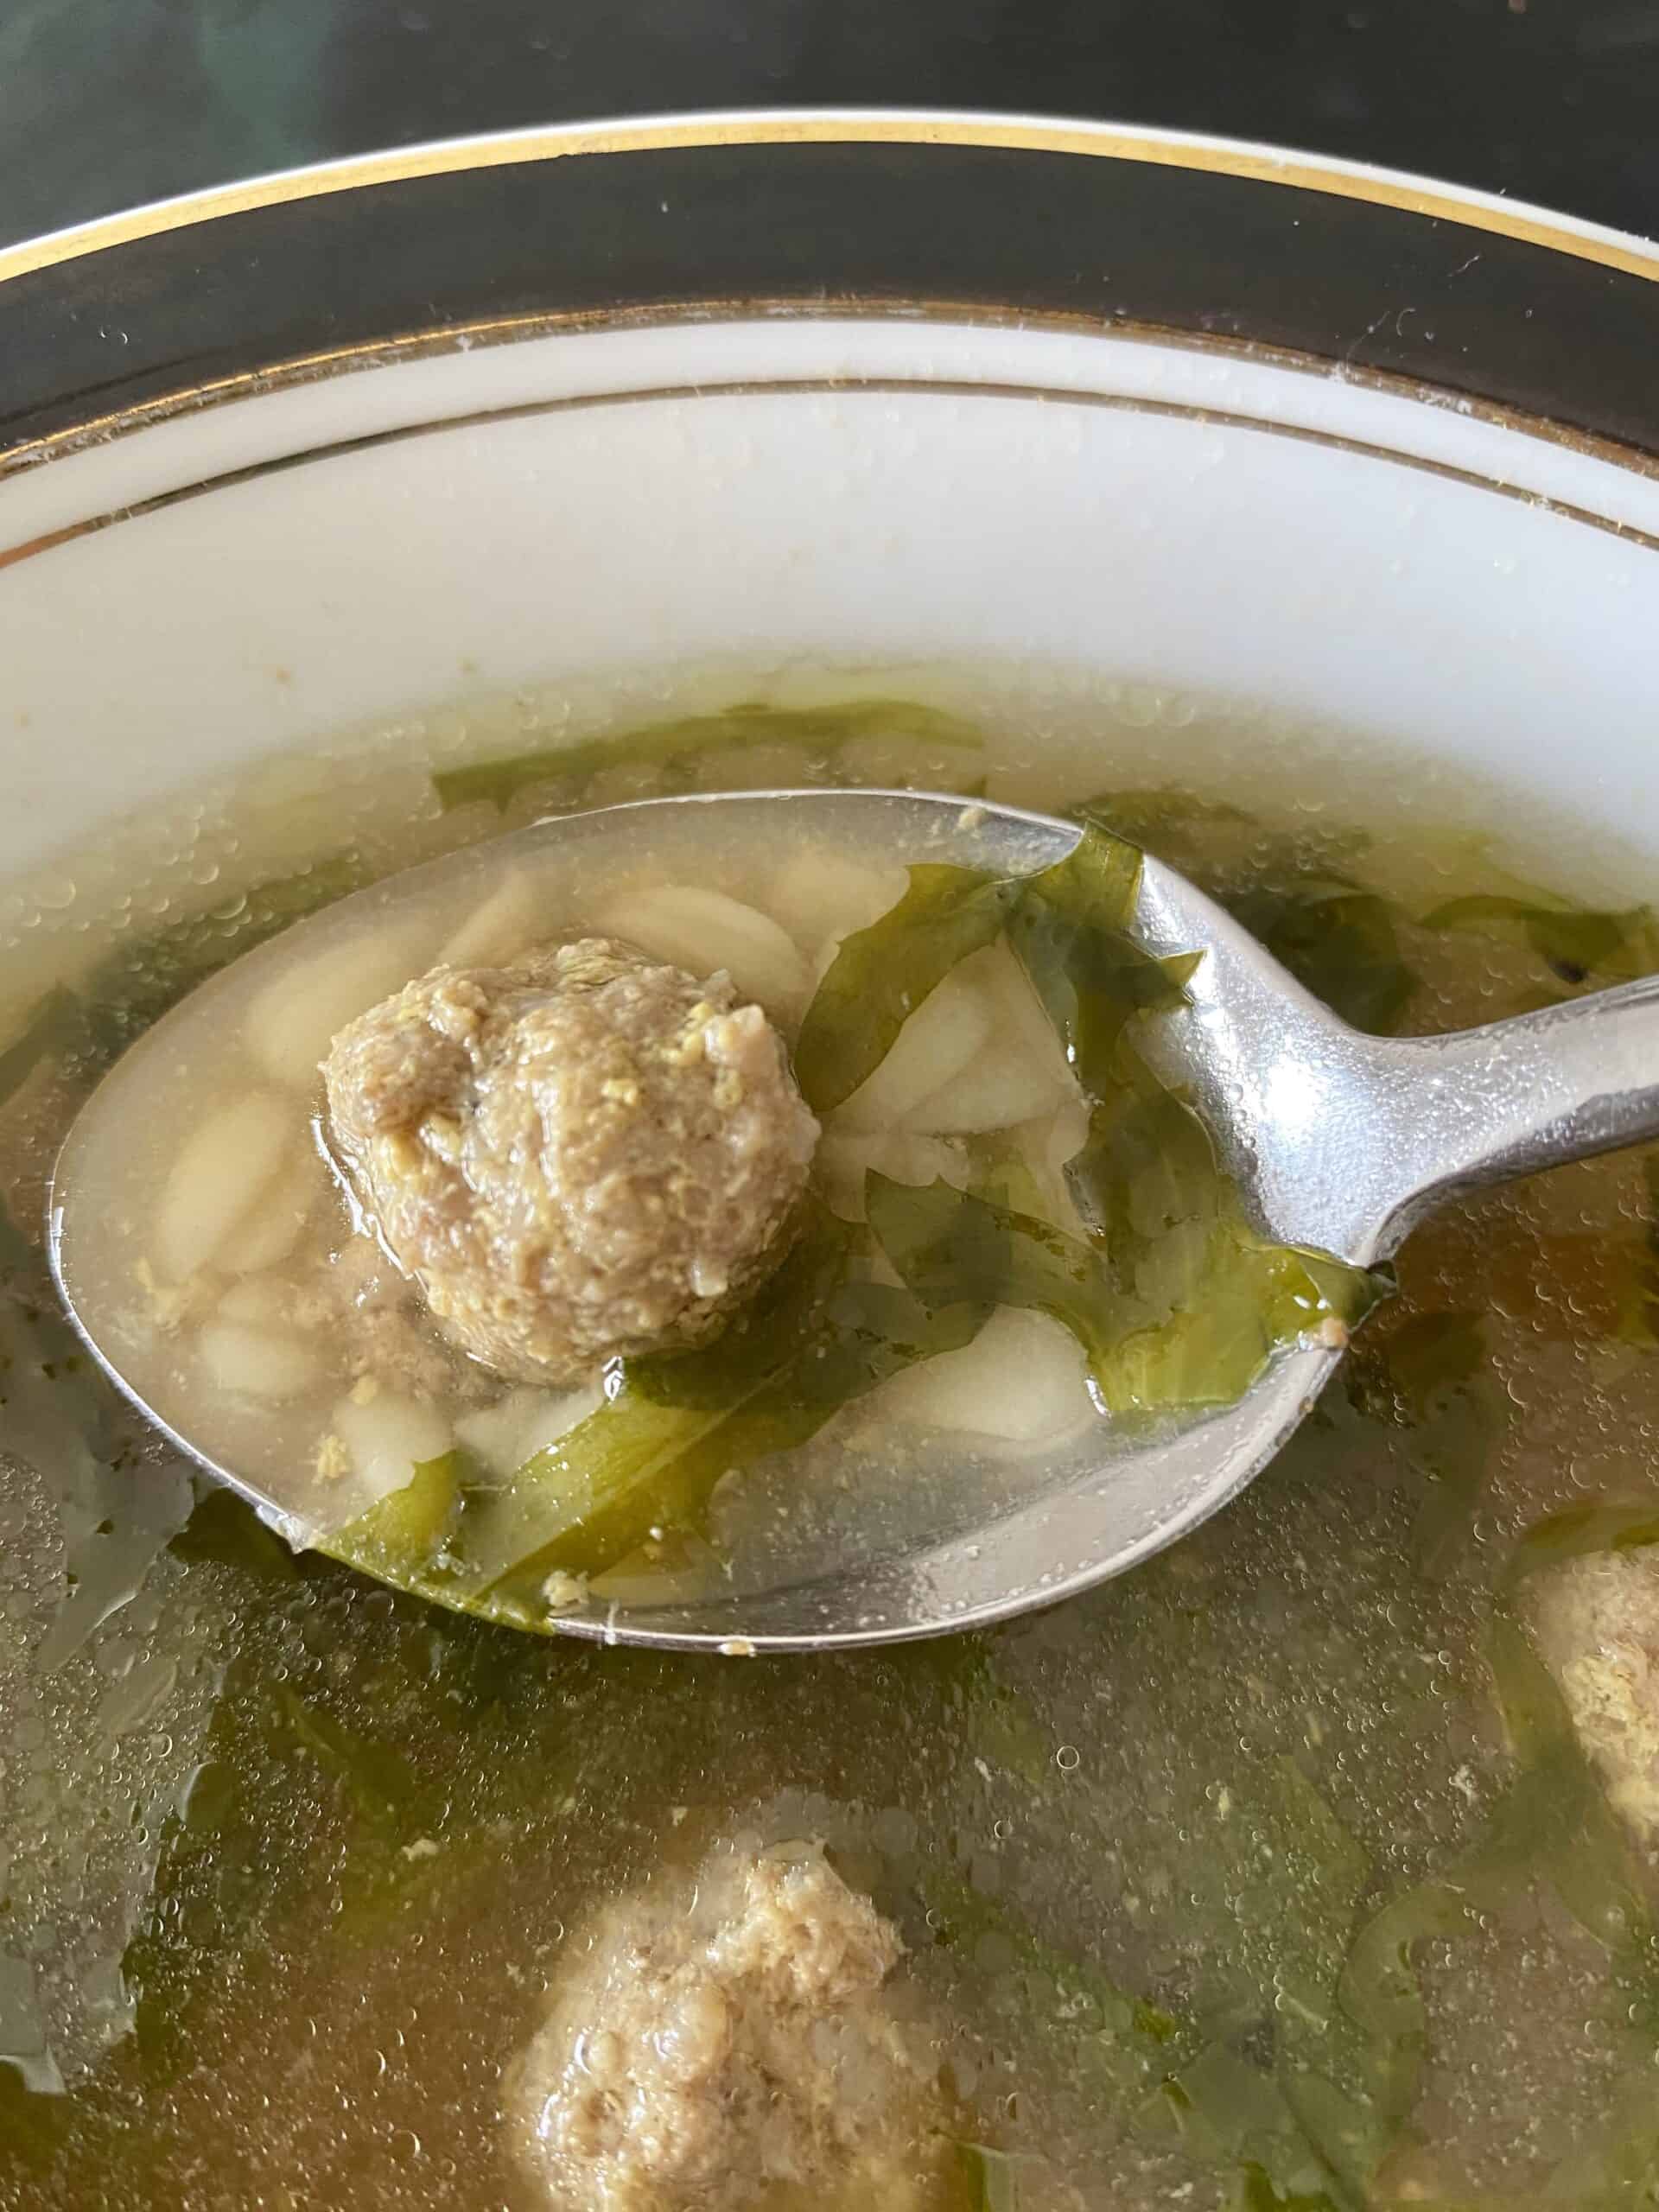 Italian wedding soup in a spoon